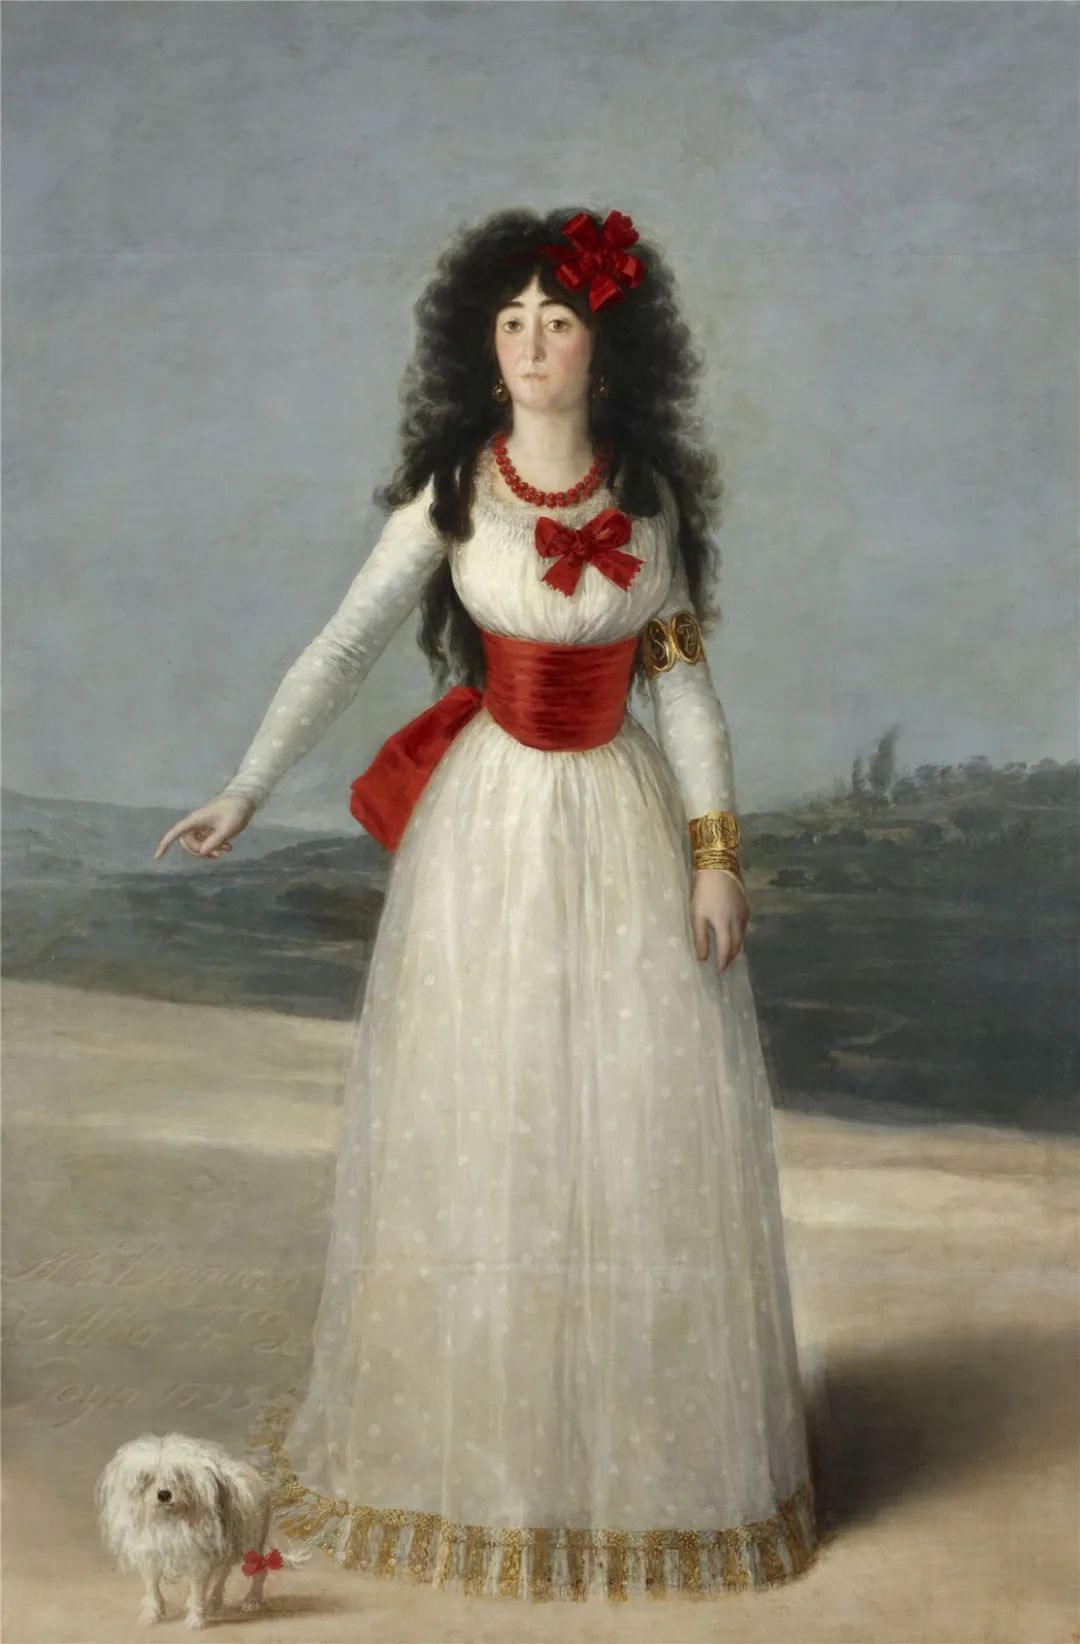 油画《阿尔瓦女公爵像/白色公爵像》(1795) 西班牙浪漫主义画家